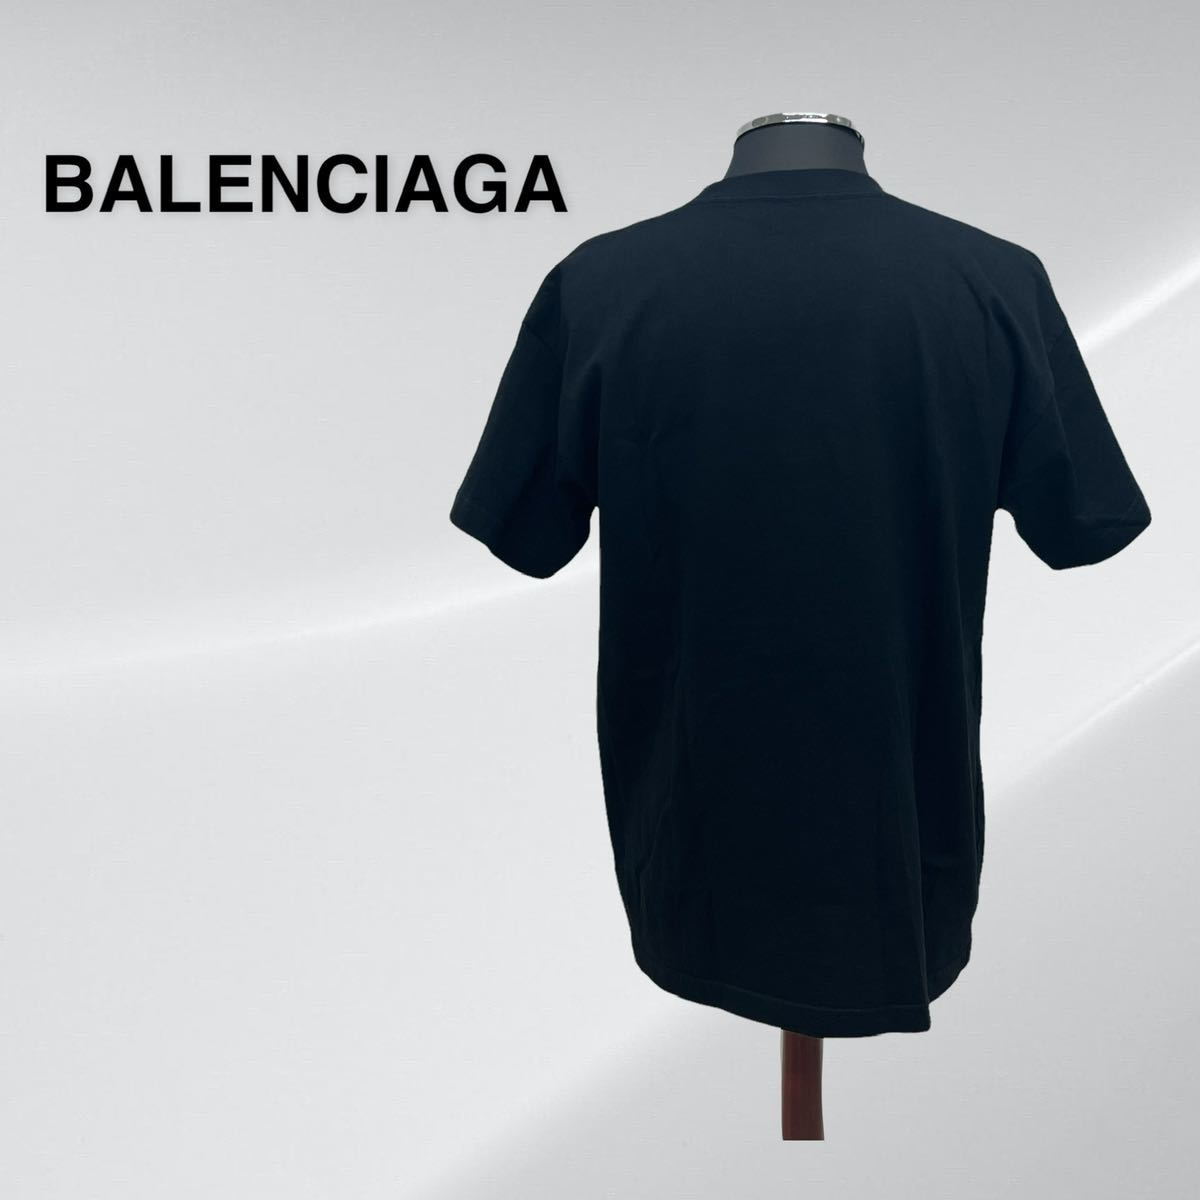 BALENCIAGA バレンシアガ REAL BALENCIAGA リアルバレンシアガ プリント クルーネック 半袖 Tシャツ メンズ 612965 TIVA1_画像2